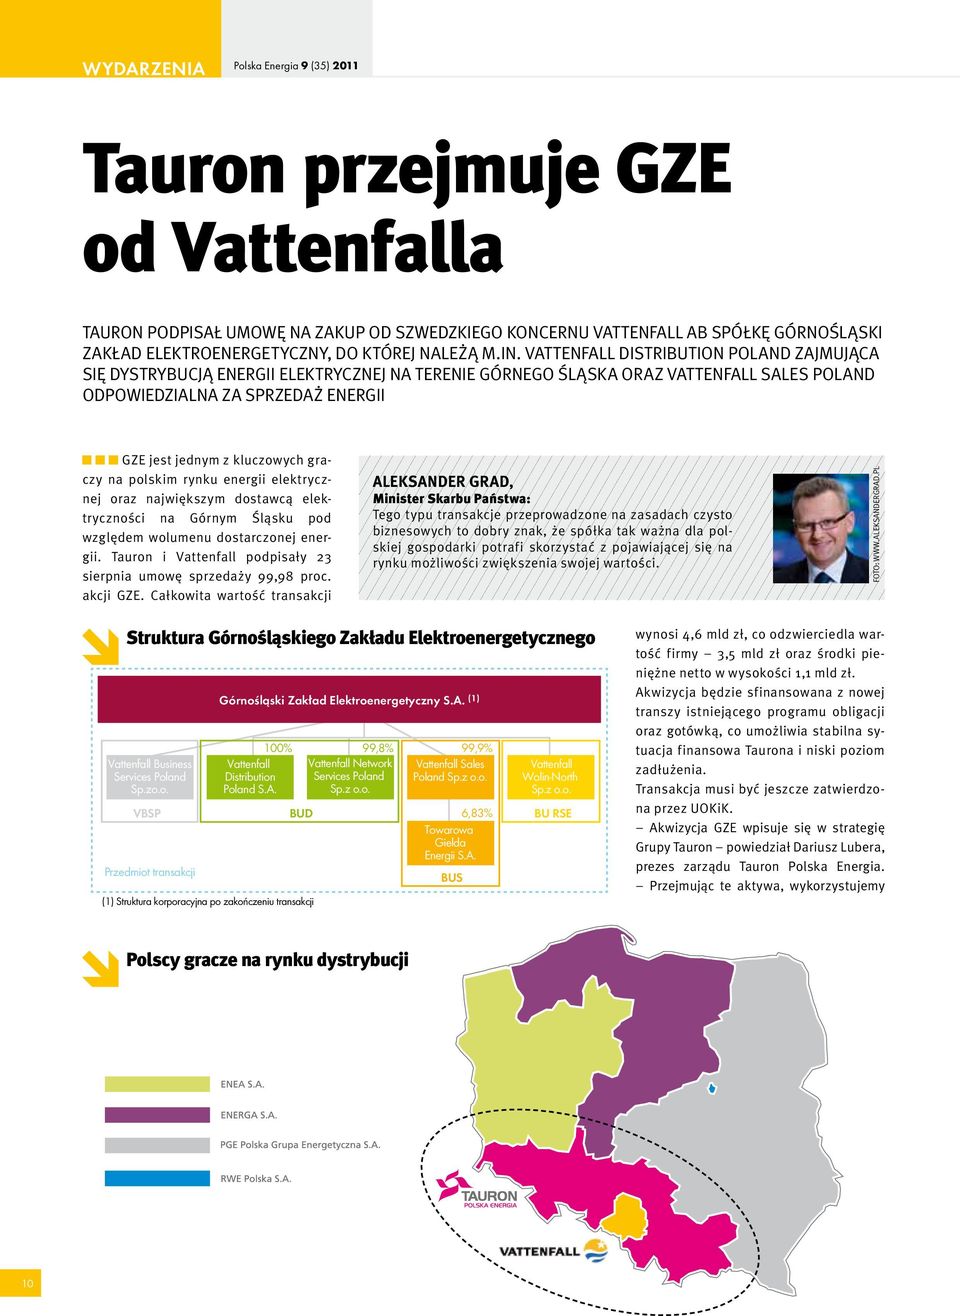 Vattenfall Distribution Poland zajmująca się dystrybucją energii elektrycznej na terenie Górnego Śląska oraz Vattenfall Sales Poland odpowiedzialna za sprzedaż energii GZE jest jednym z kluczowych